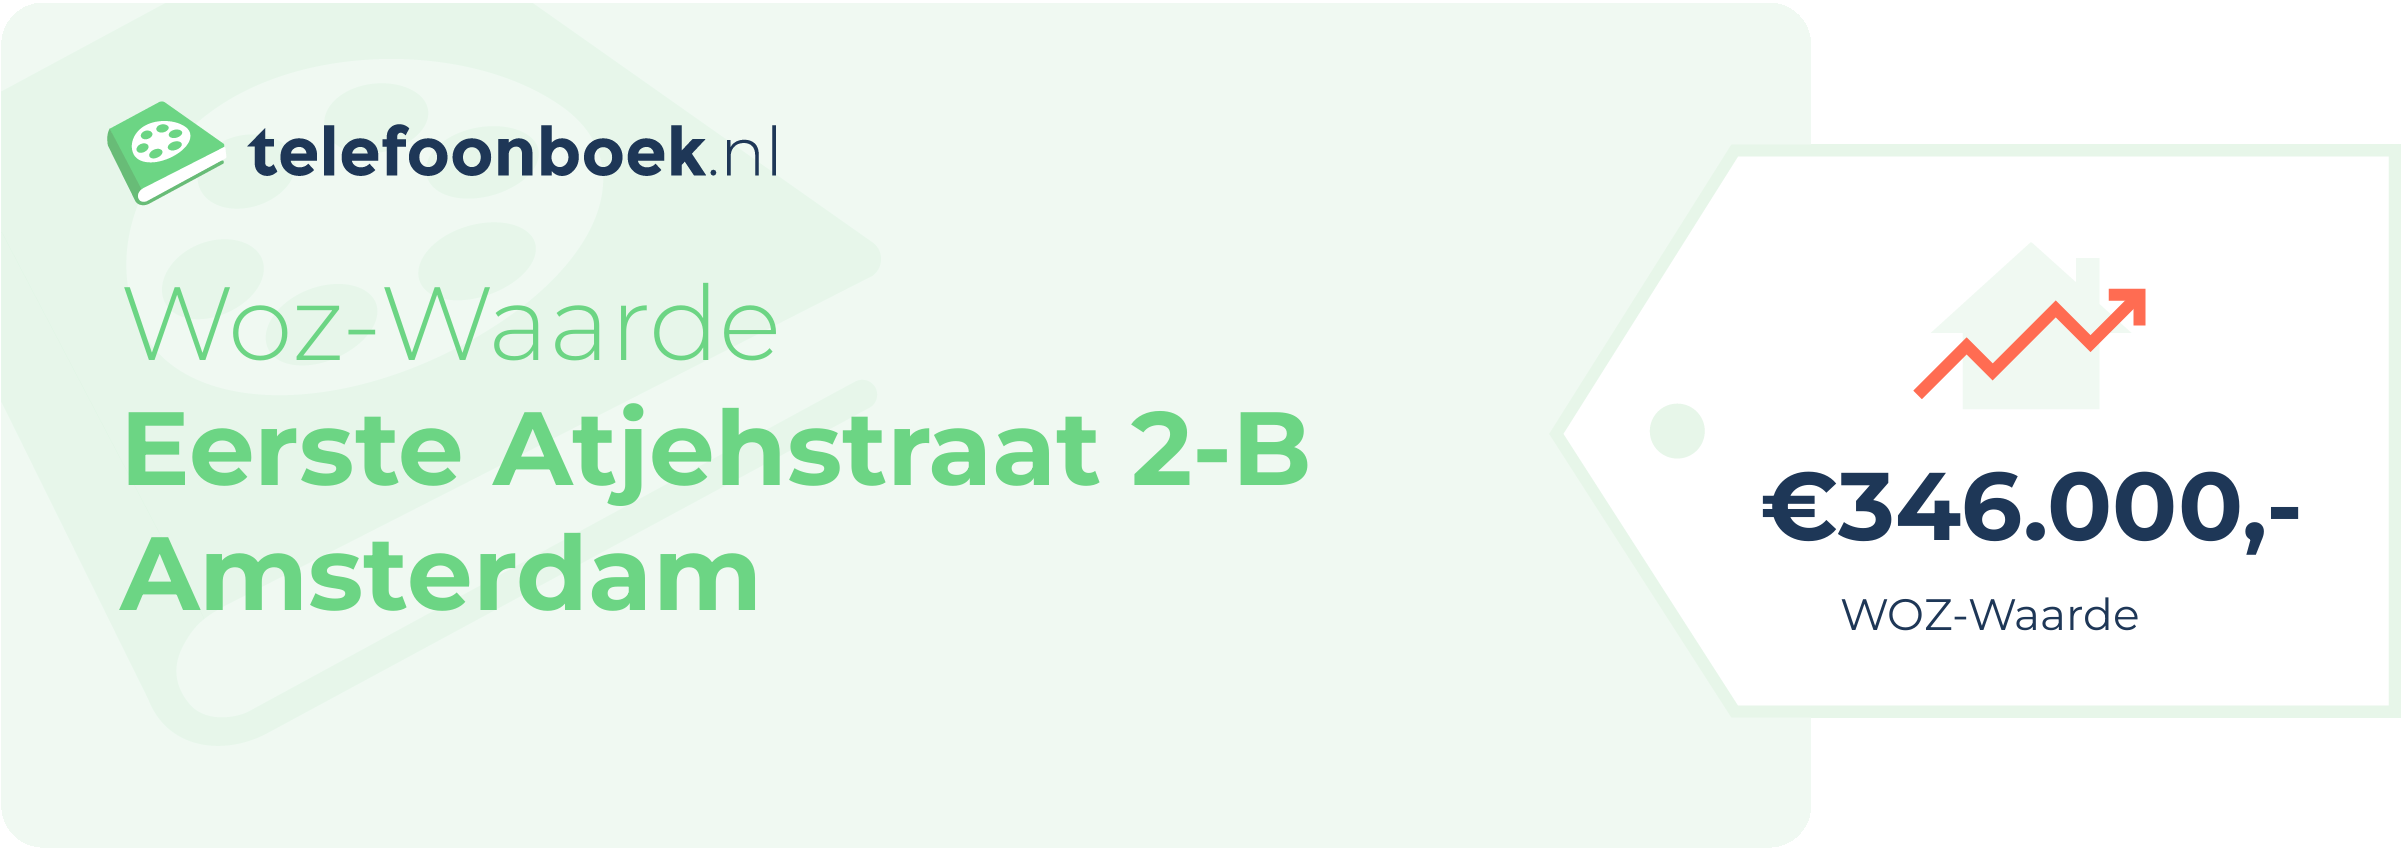 WOZ-waarde Eerste Atjehstraat 2-B Amsterdam